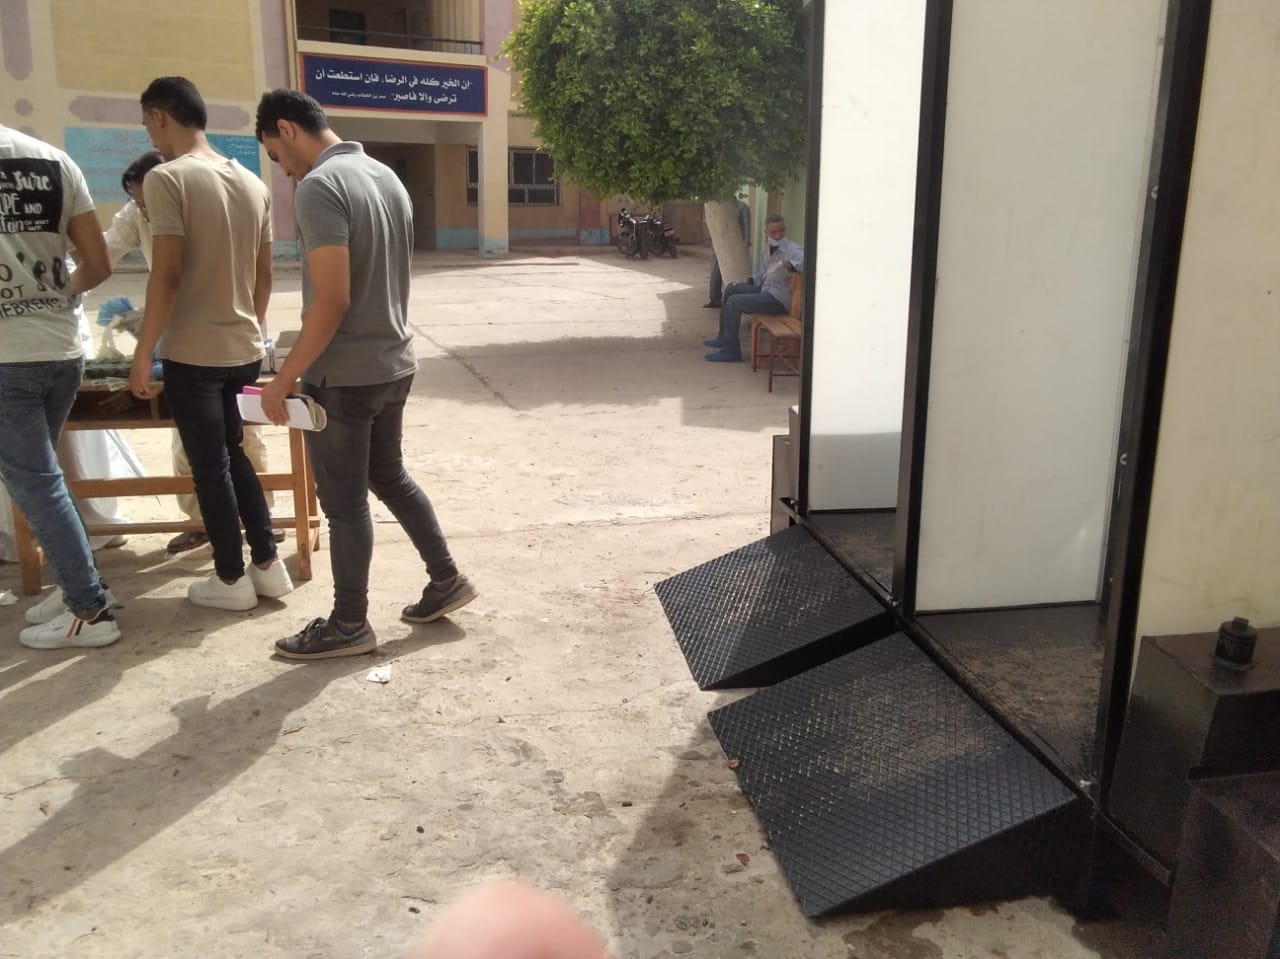 الكشف على الطلاب وتعقيمهم قبل دخولهم اللجان بكفر الشيخ (2)